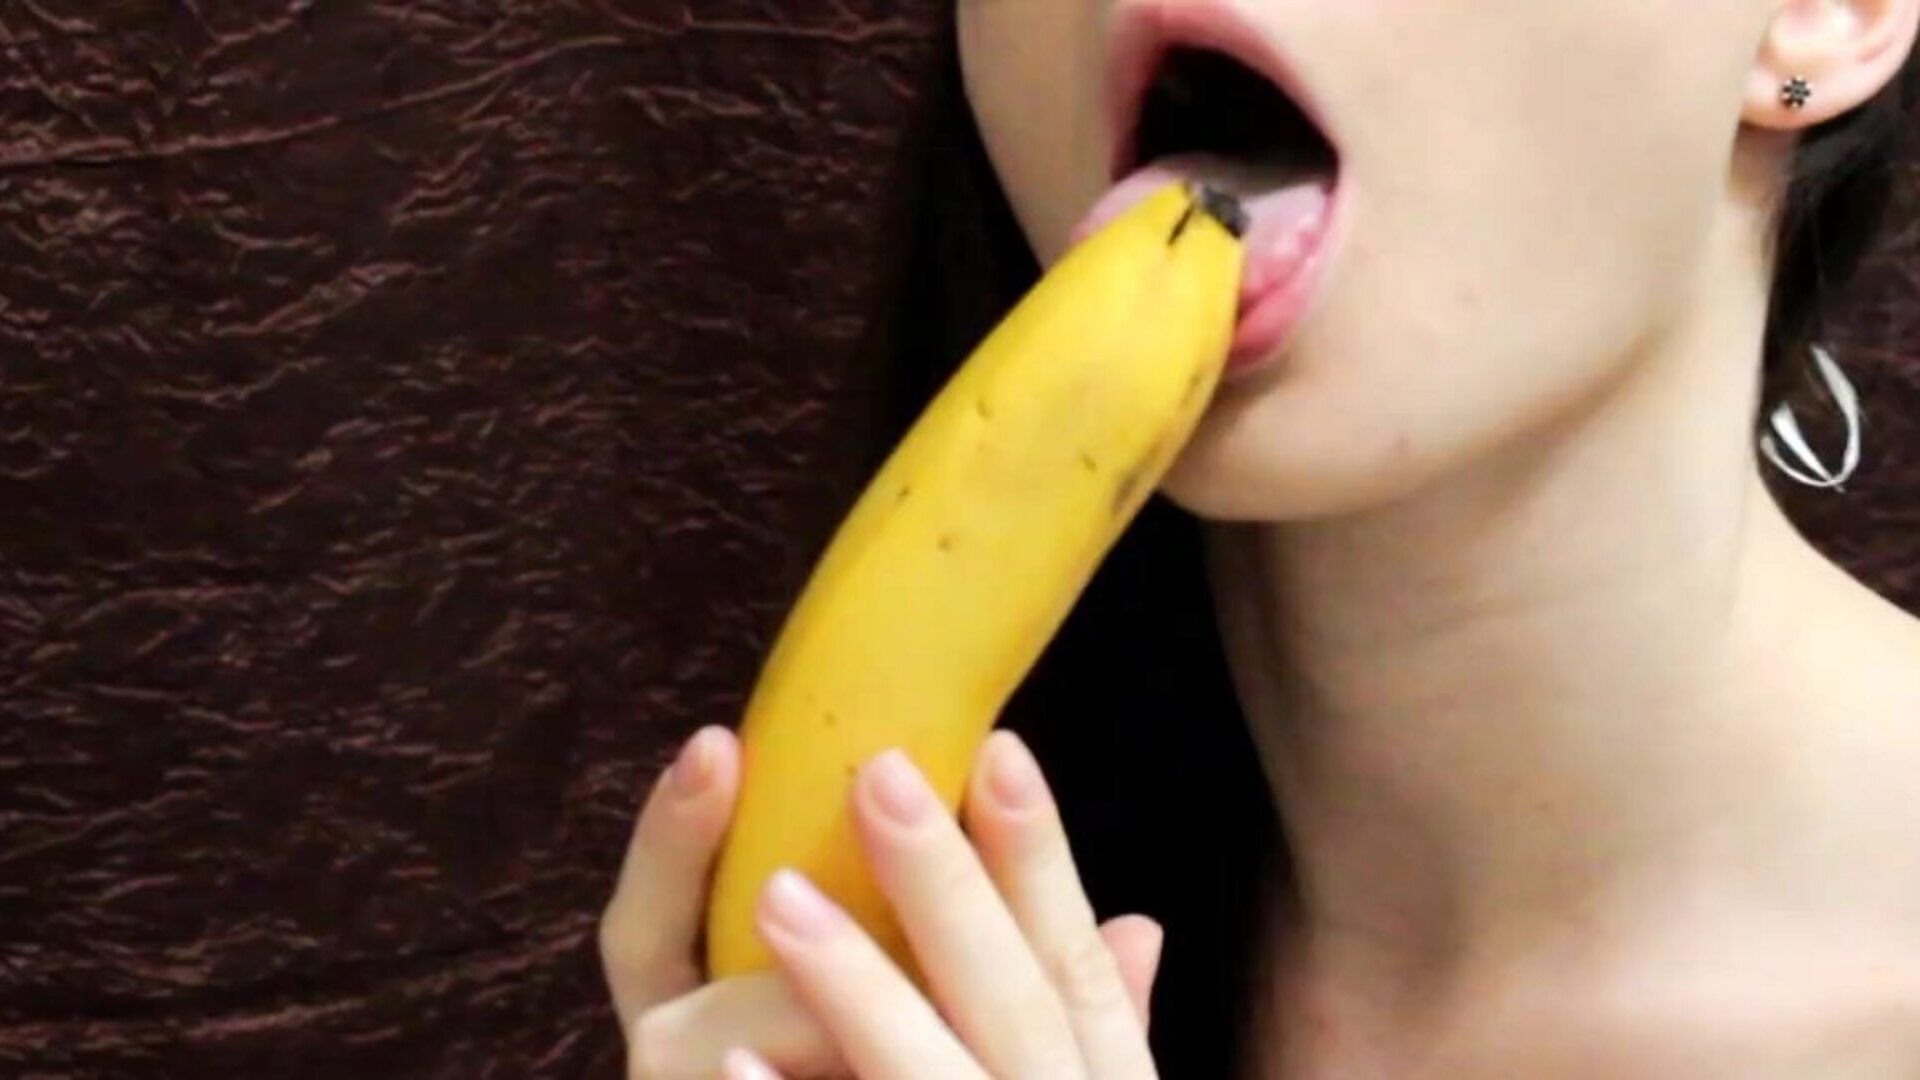 Η αδερφή της ήταν η πεινασμένη και της έδωσα το cum. πιπιλίζοντας μια μπανάνα